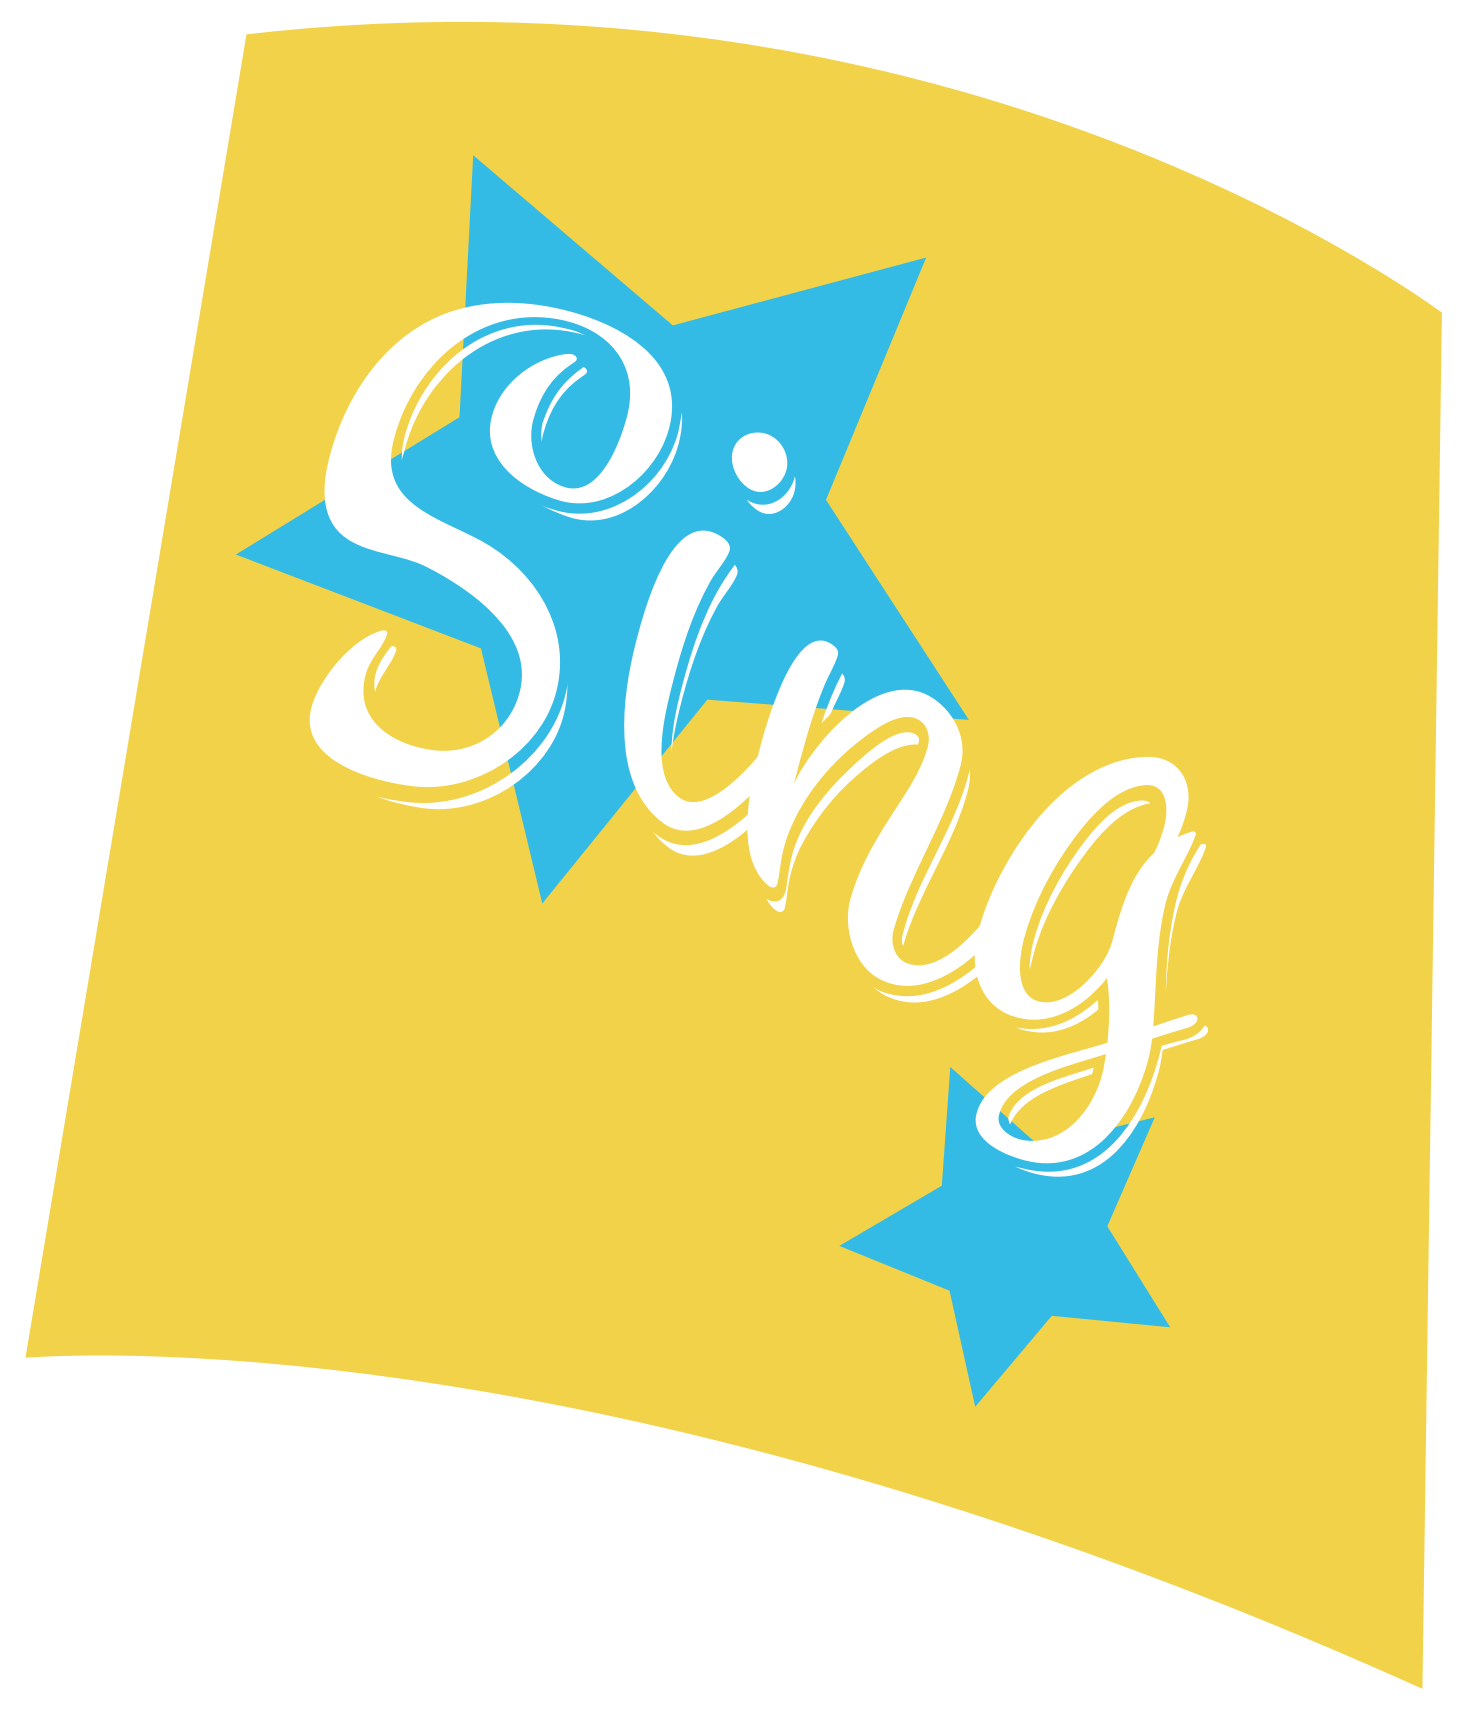 Sing